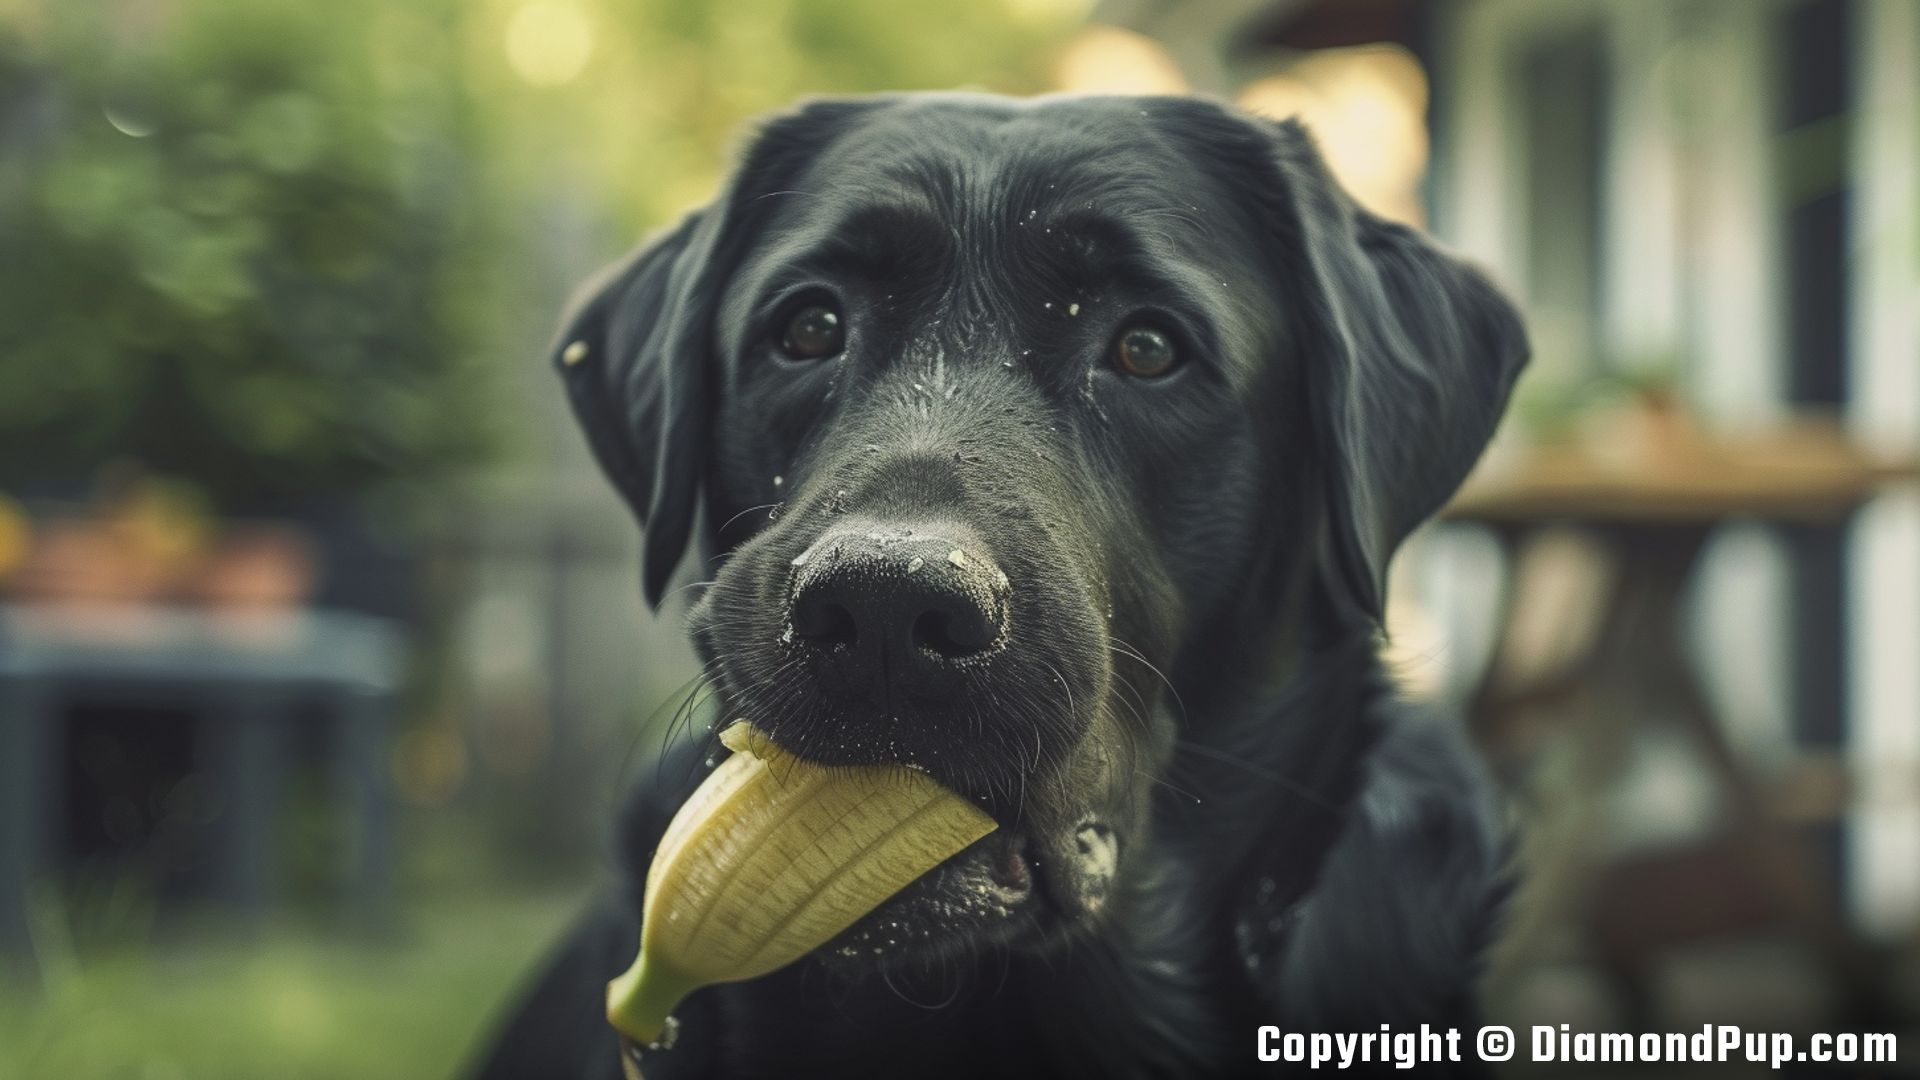 Image of a Playful Labrador Eating Banana